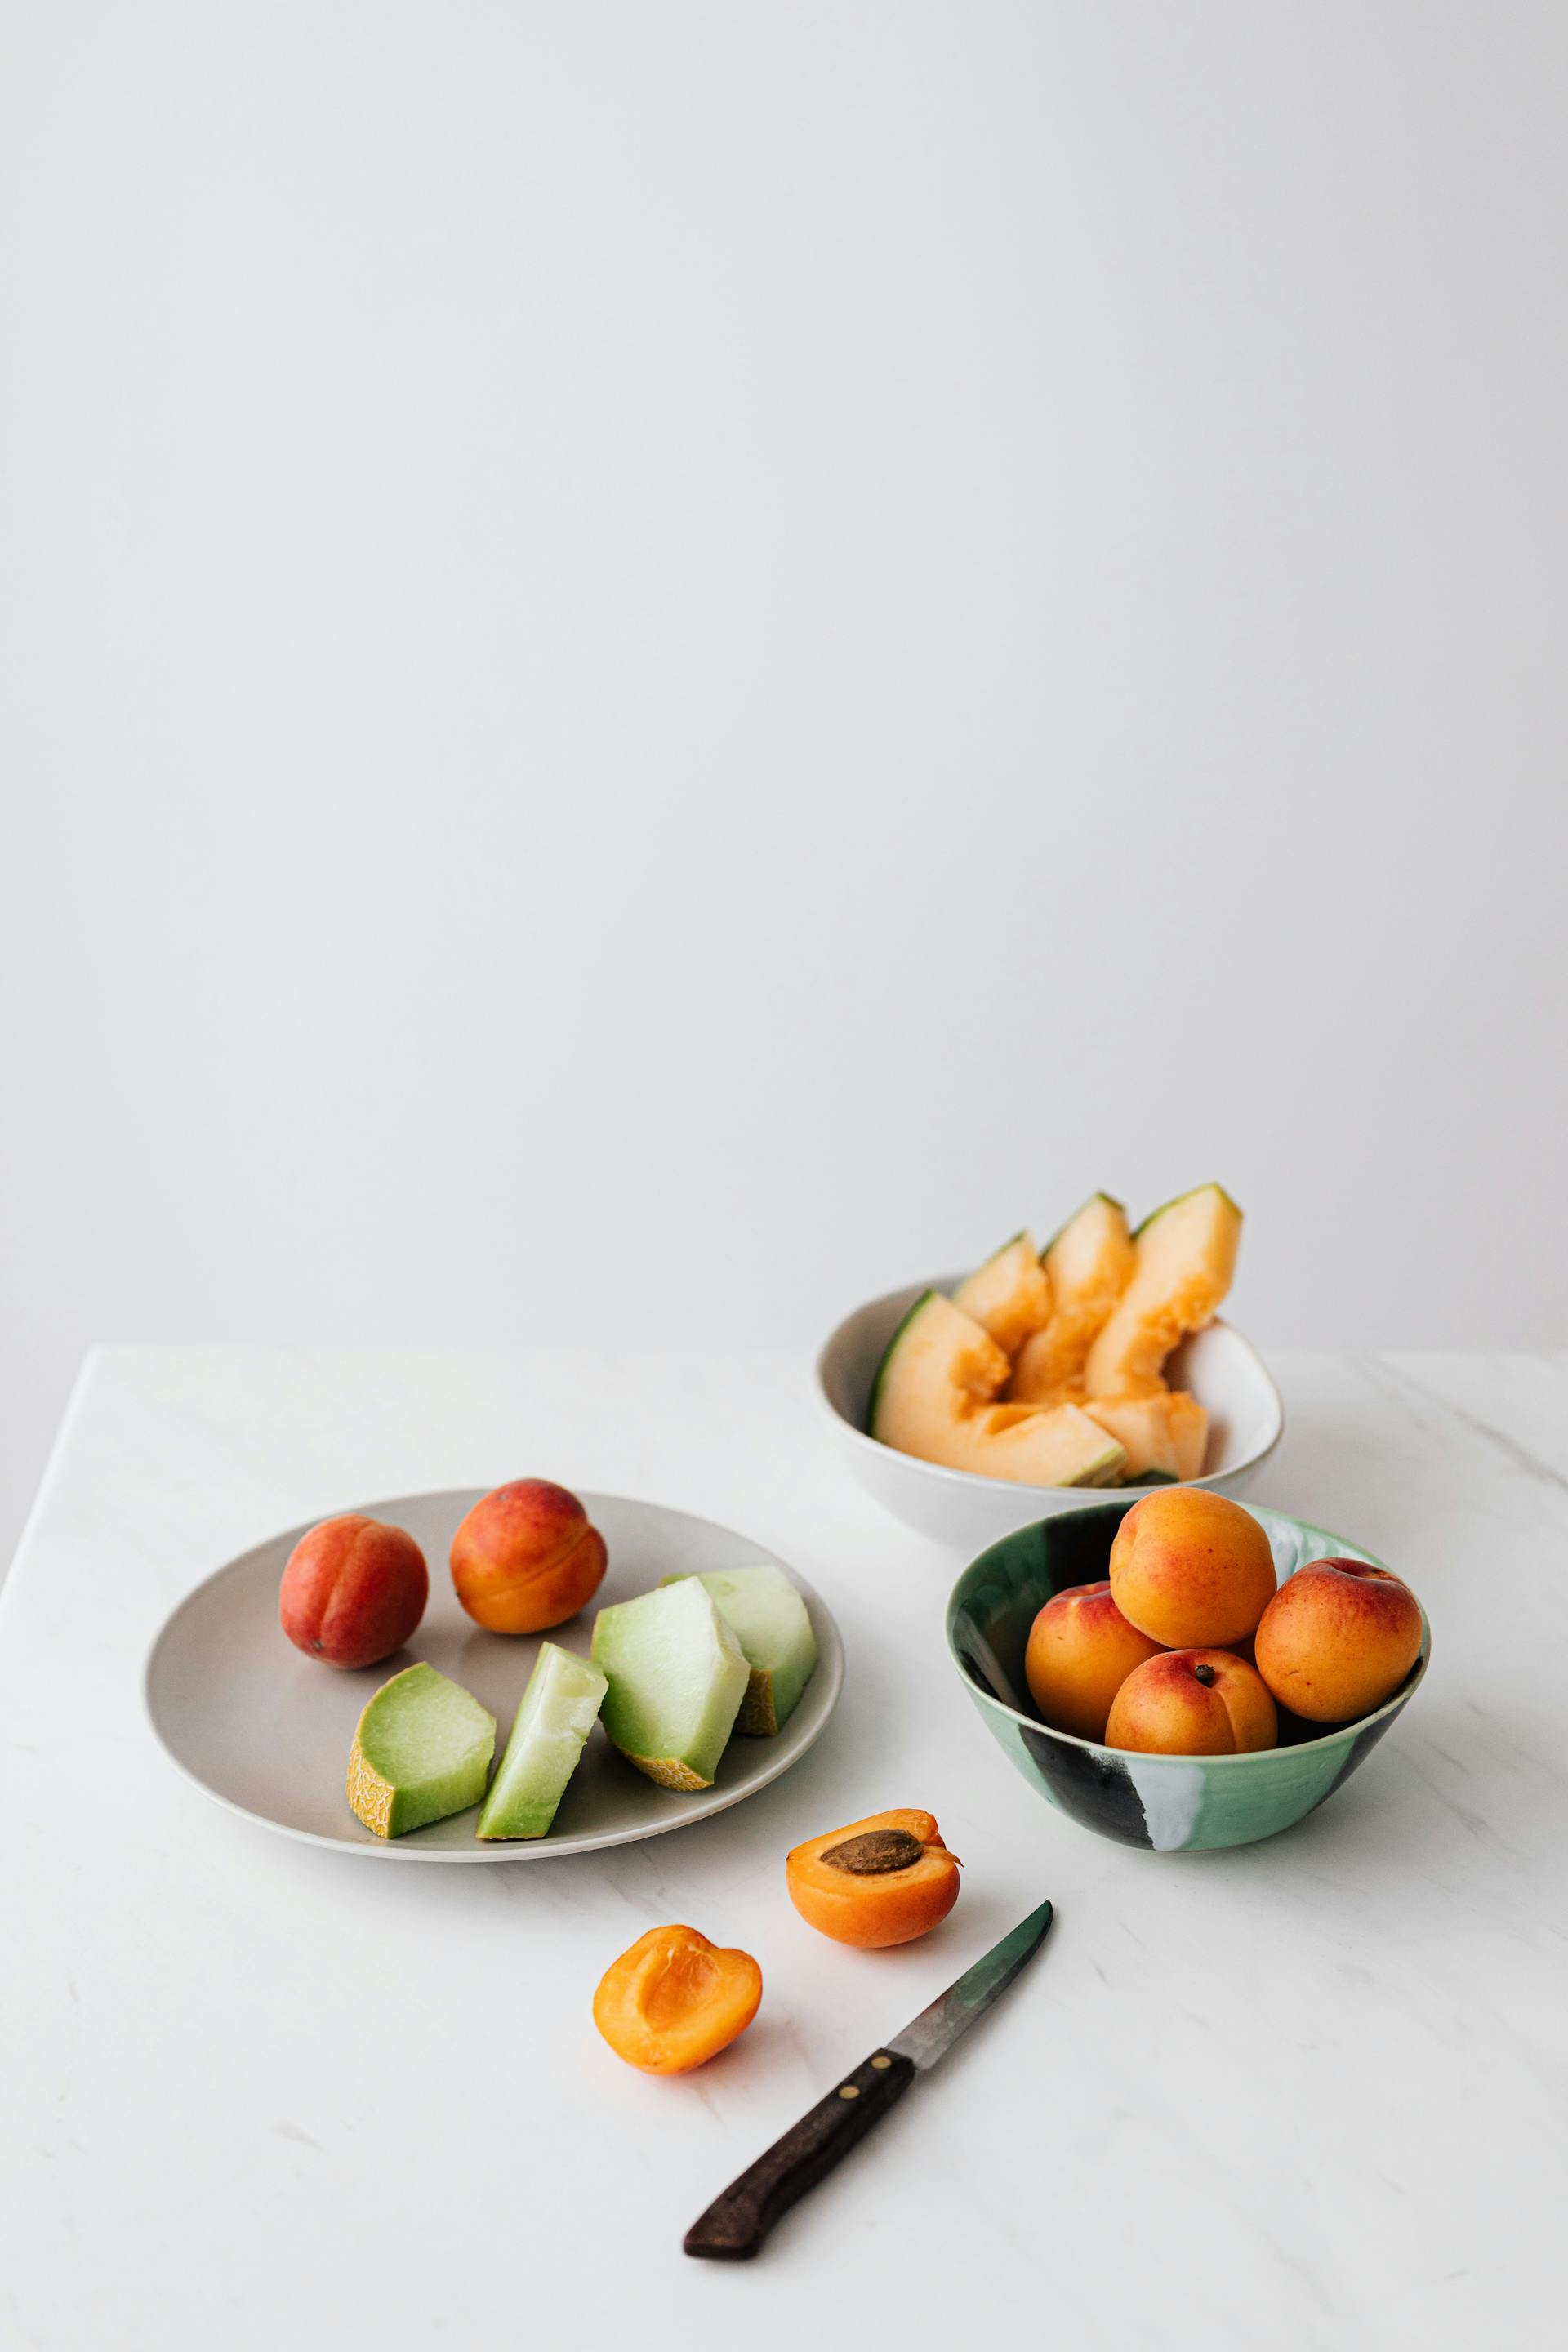 Une sélection de fruits tranchés | Source : Pexels